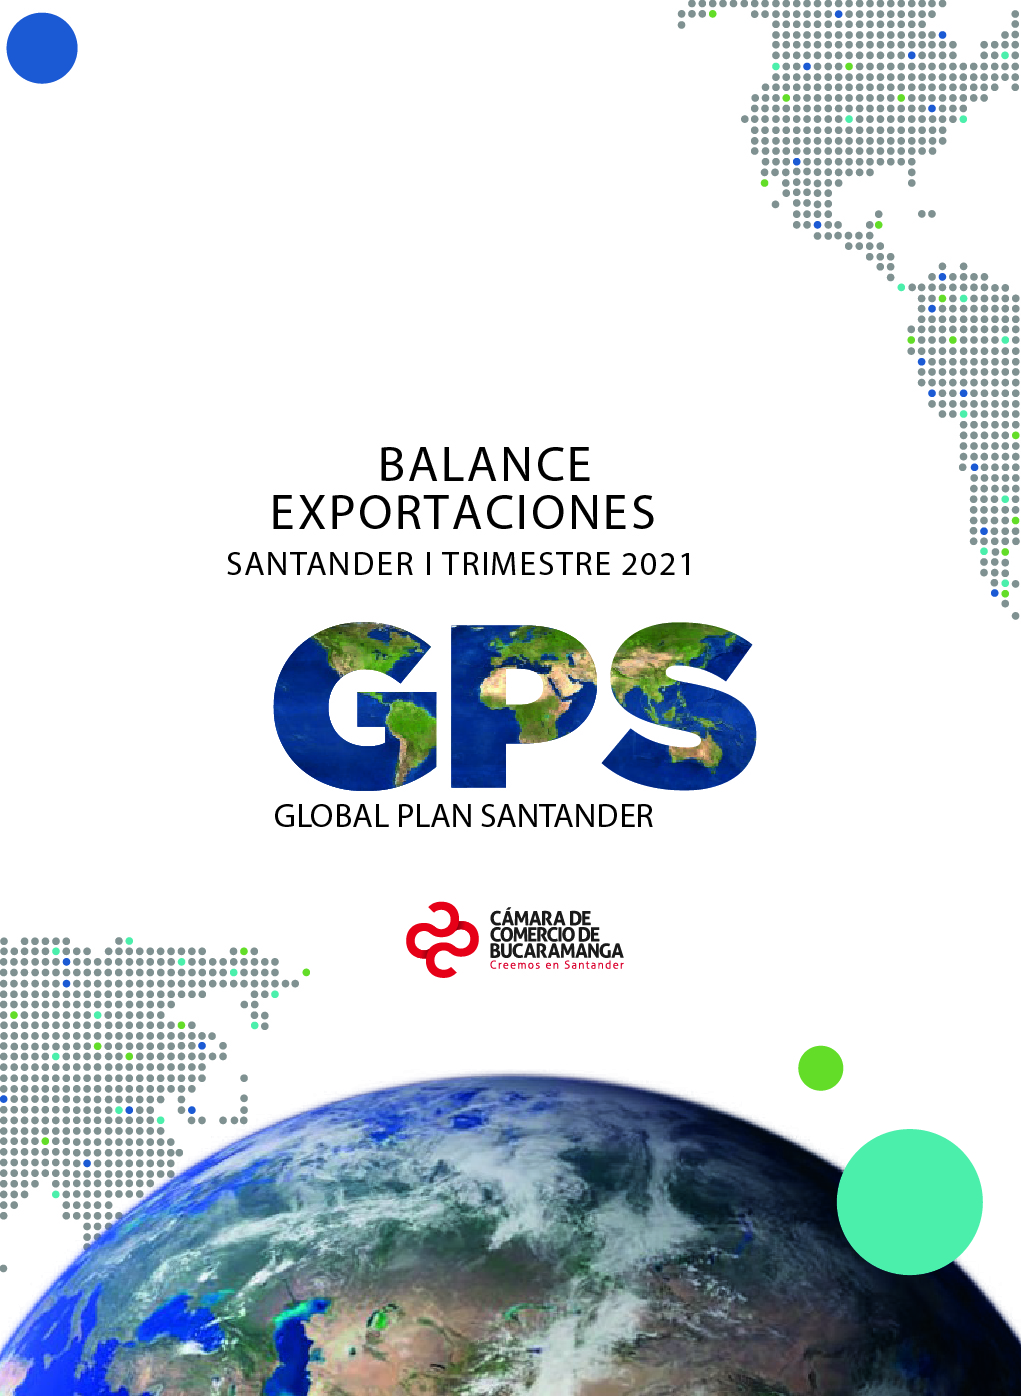 Balance Exportaciones de Santander 2021 - enero-marzo